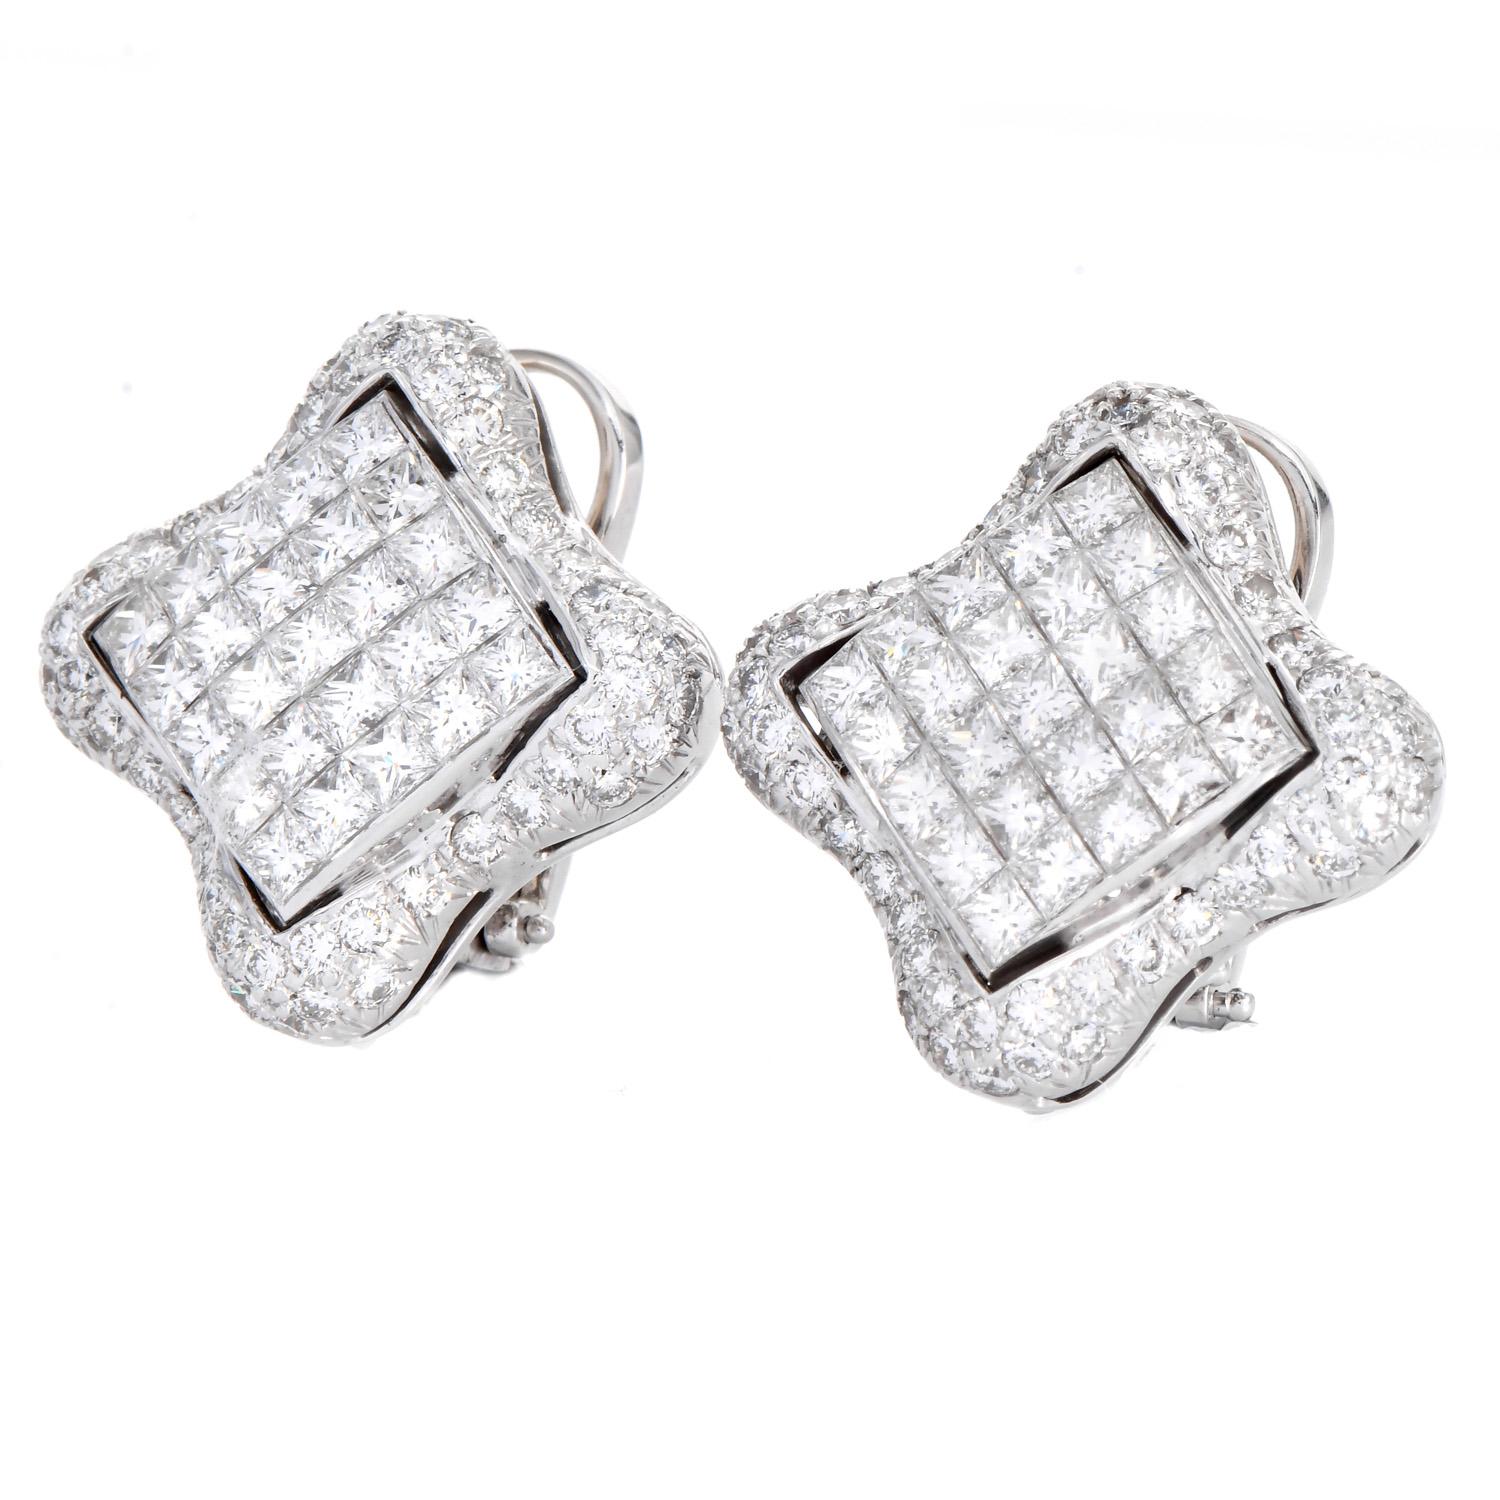 Atemberaubende Estate Quatrefoil Statement Earrings mit insgesamt 6,28 Karat natürlichen Diamanten, gefasst in 18 Karat Weißgold.
In der Mitte befinden sich quadratische Diamanten, die von einem zarten Kleeblattmotiv mit runden, gepflasterten